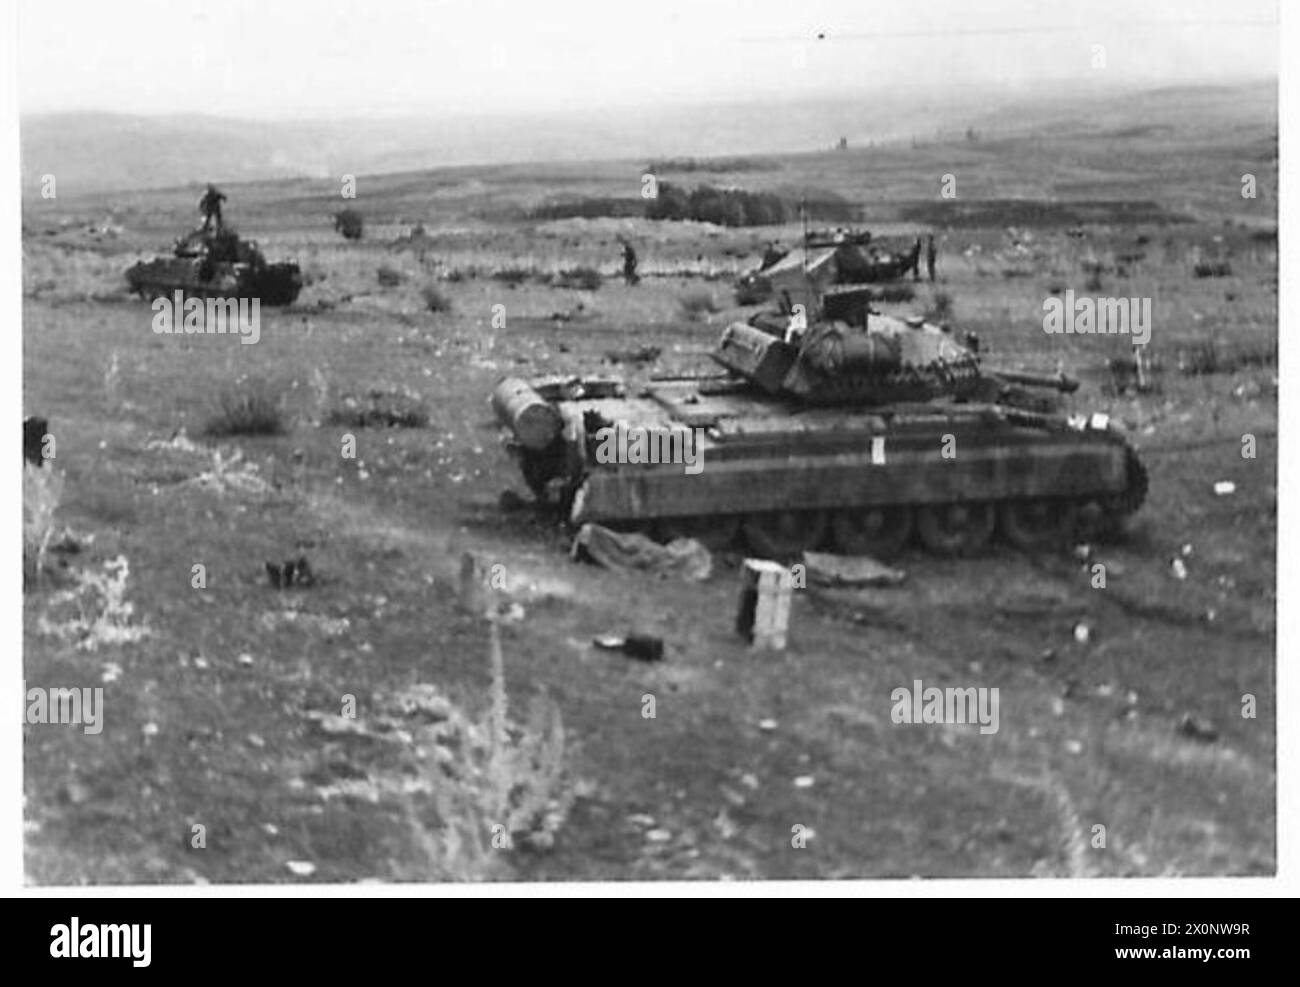 THE BRITISH ARMY IN THE TUNISIA CAMPAIGN, 1942 NOVEMBRE-1943 MAGGIO - tre carri armati Crusader III del 17th/21st Lancers (26th Armoured Brigade, 6th Armoured Division) pronti ad avanzare, dicembre 1942 British Army, British Army, 1st Army, British Army, 6th Armoured Division Foto Stock